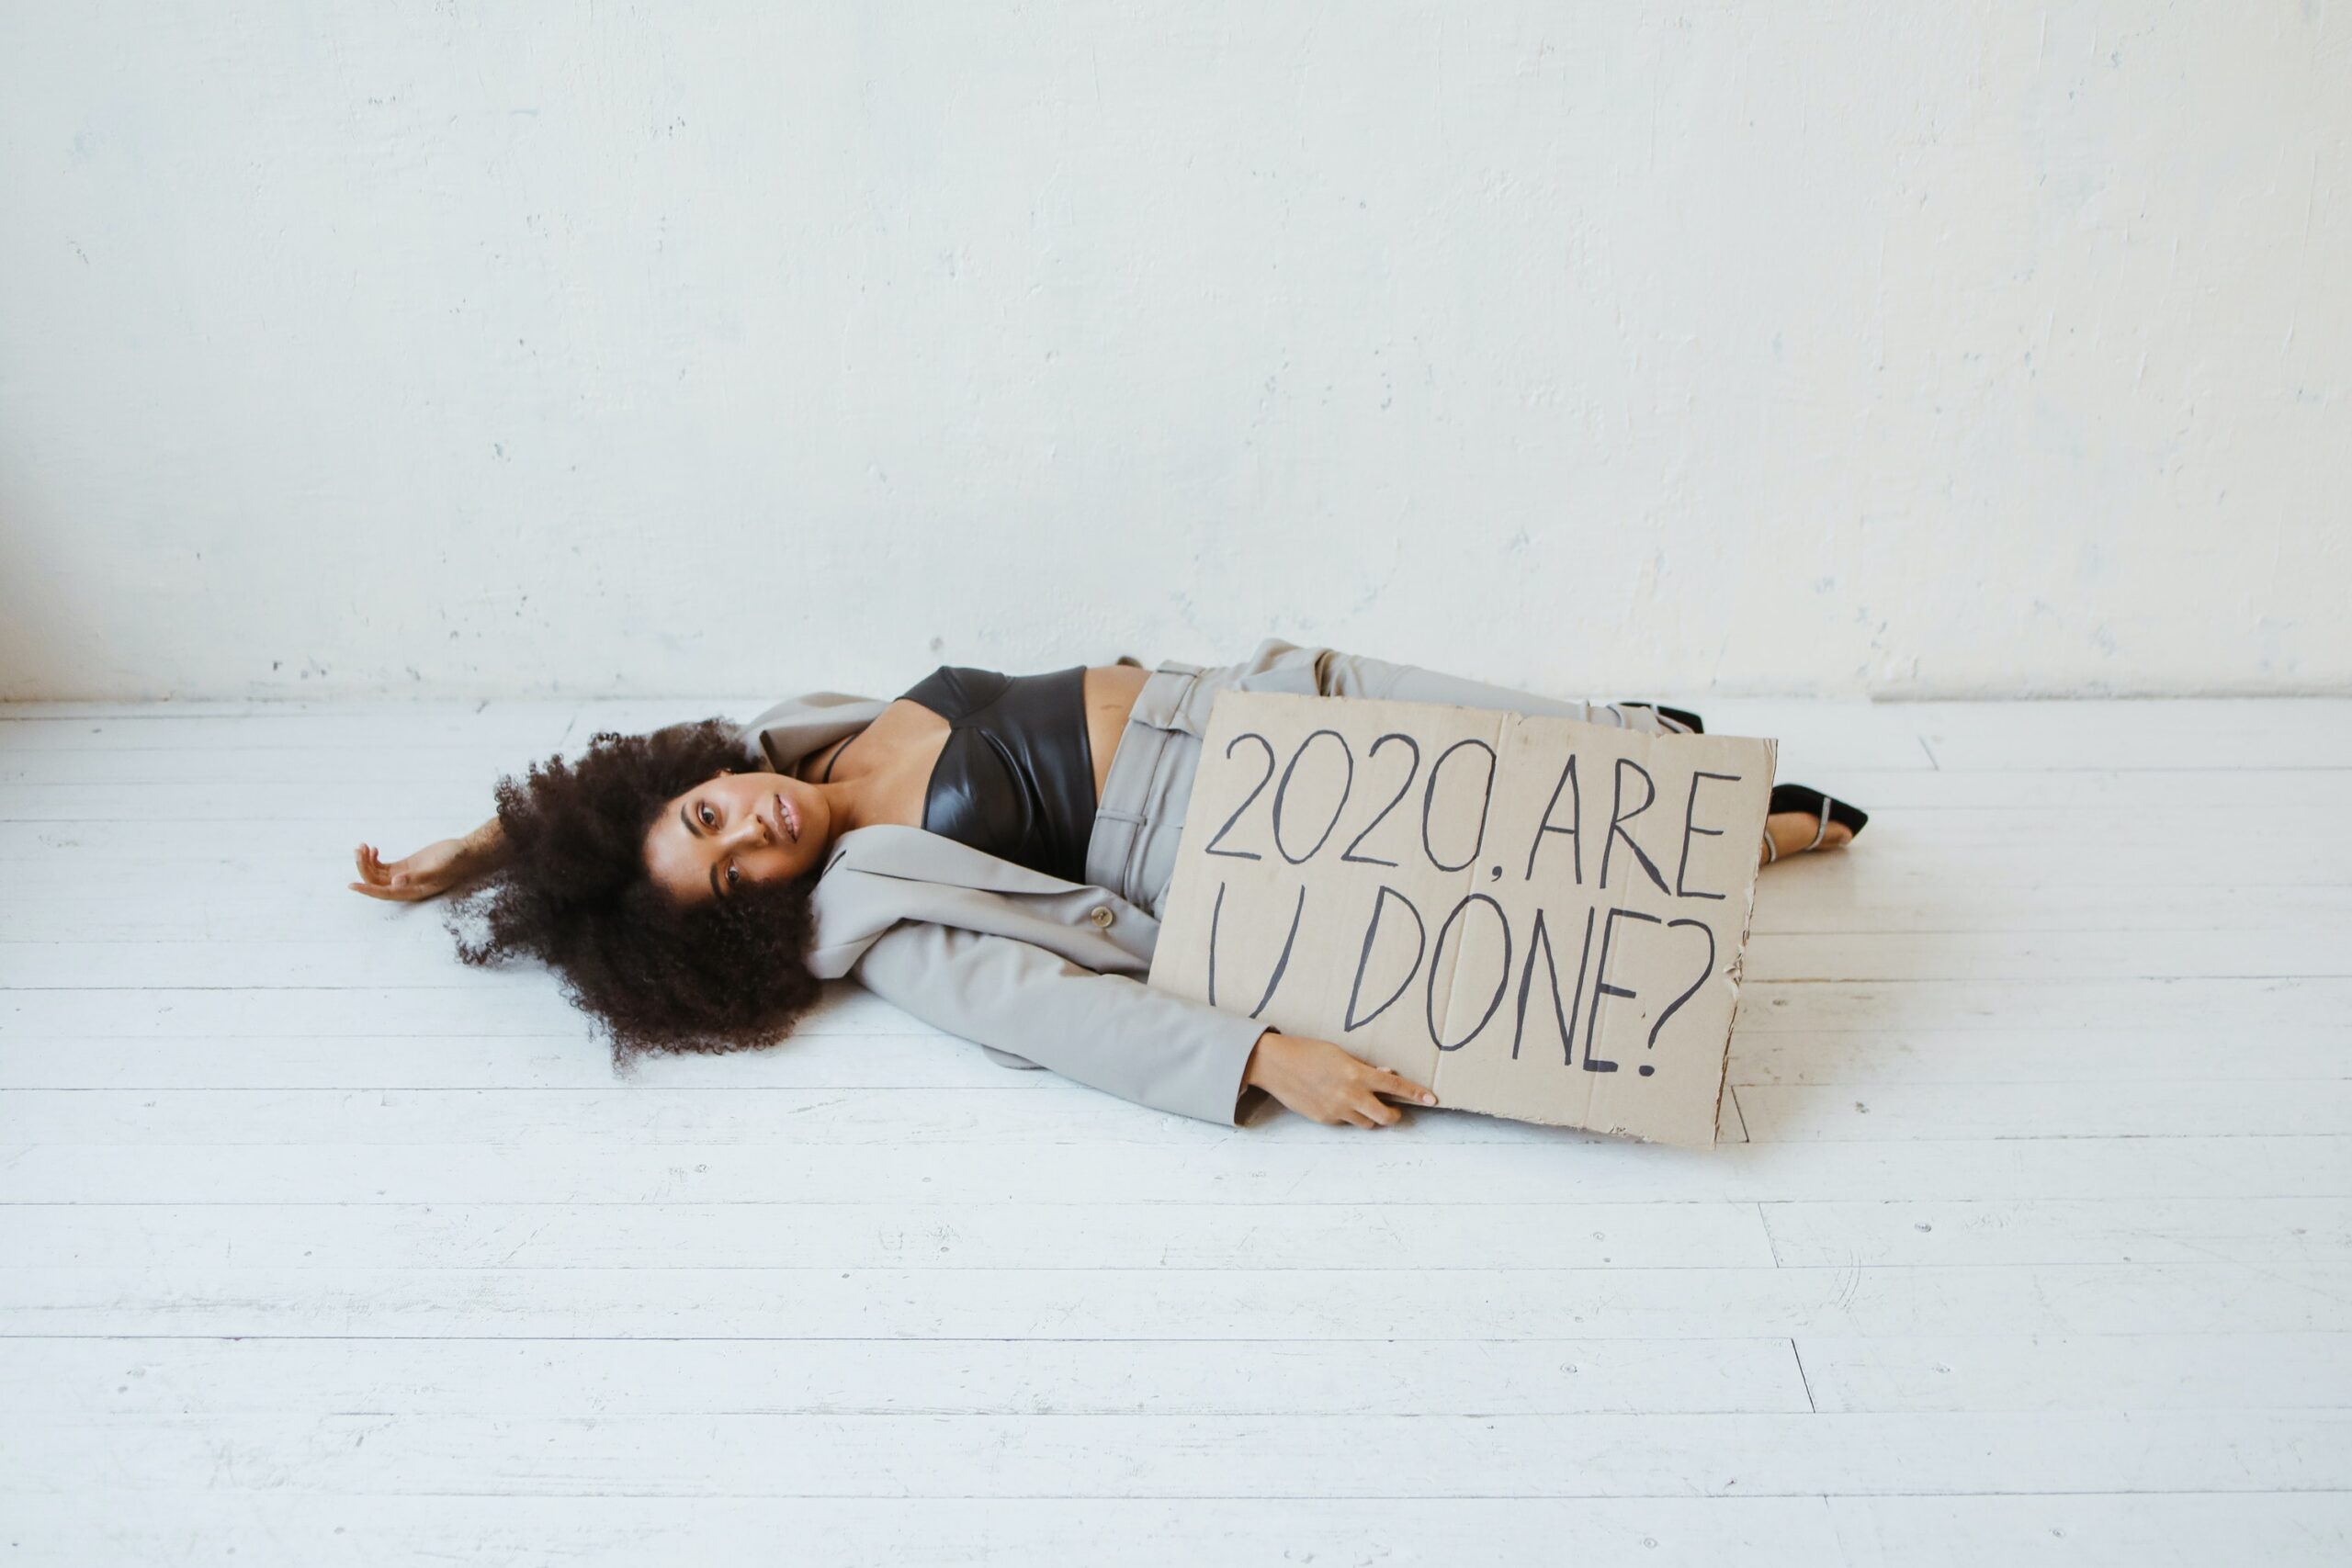 Eine Frau liegt auf dem Boden. Sie hält ein Schild in der Hand, auf dem "2020 are you done?" steht.